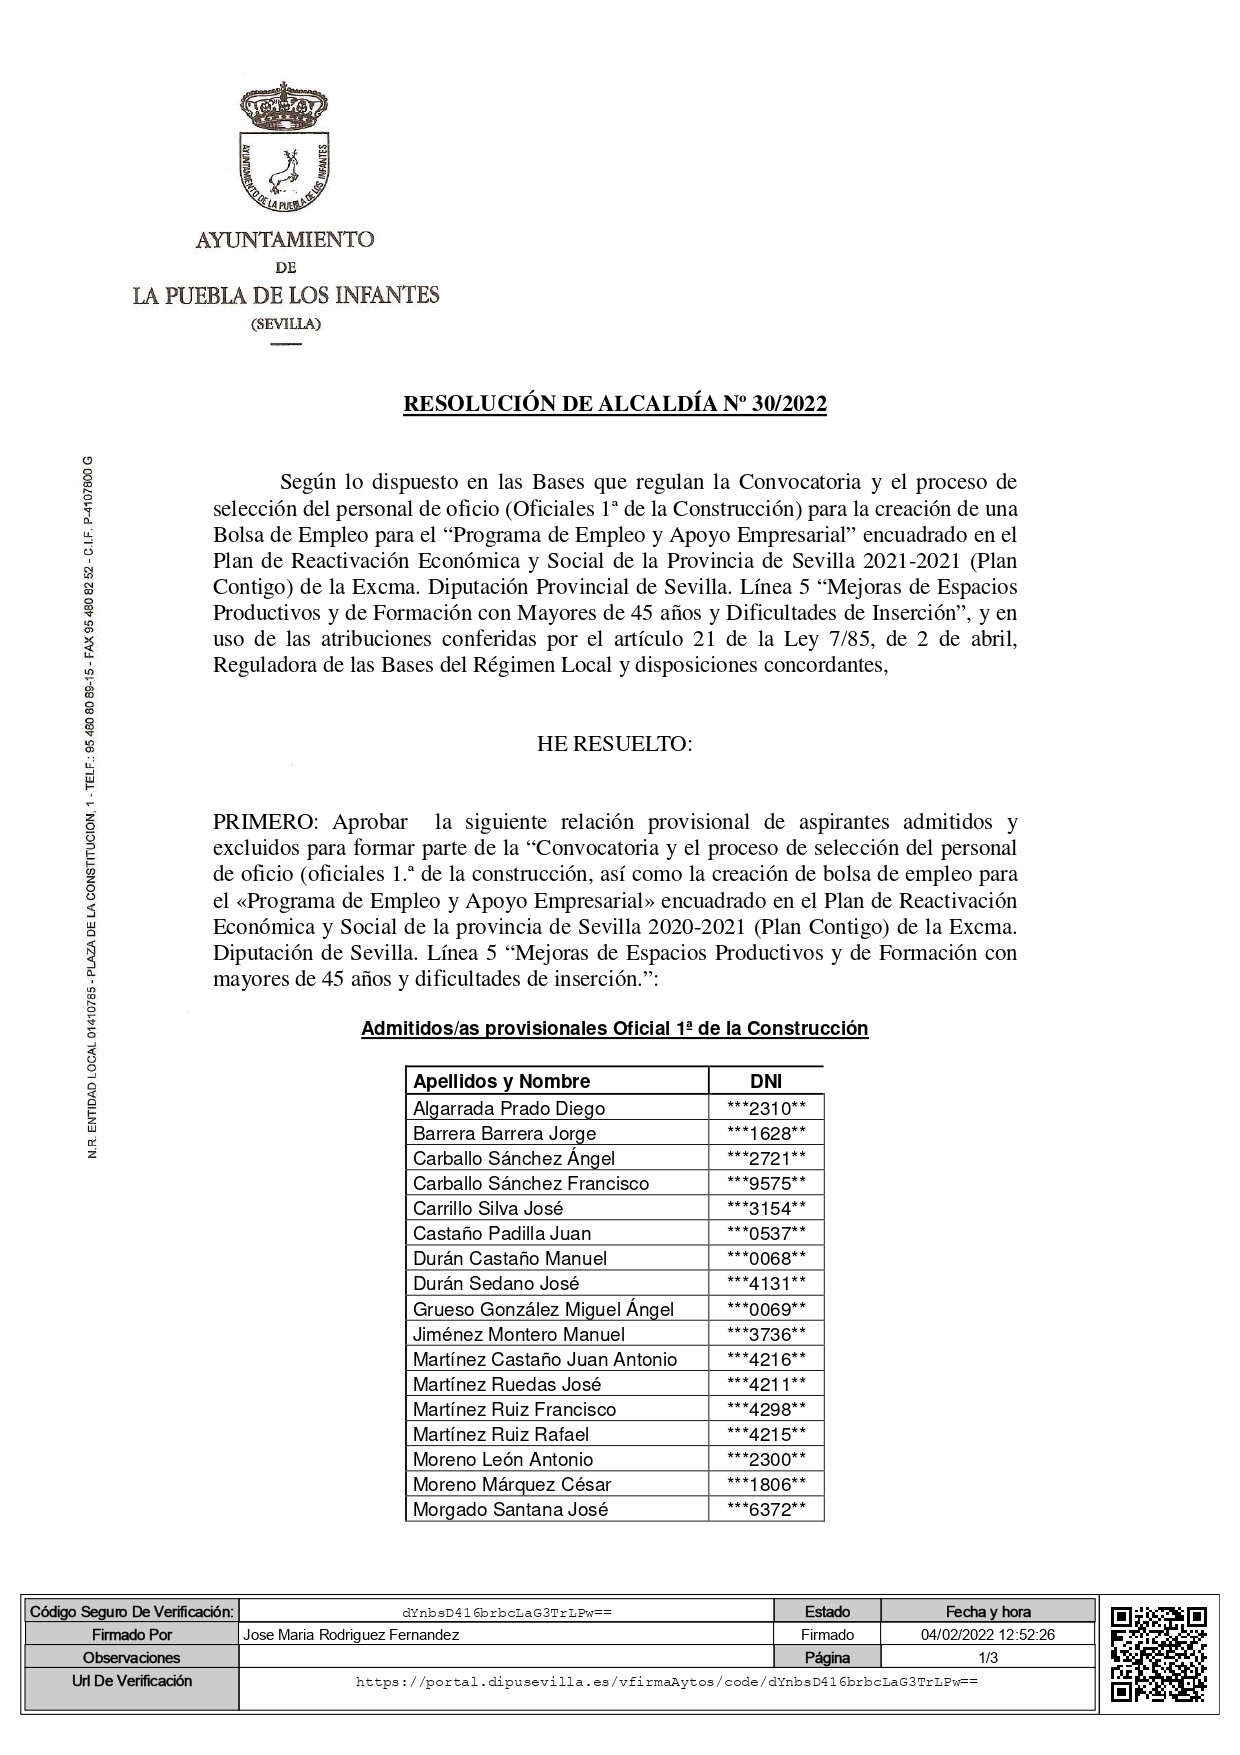 01 Resolución de Alcaldía Oficial 1ª 30-2022 F_page-0001